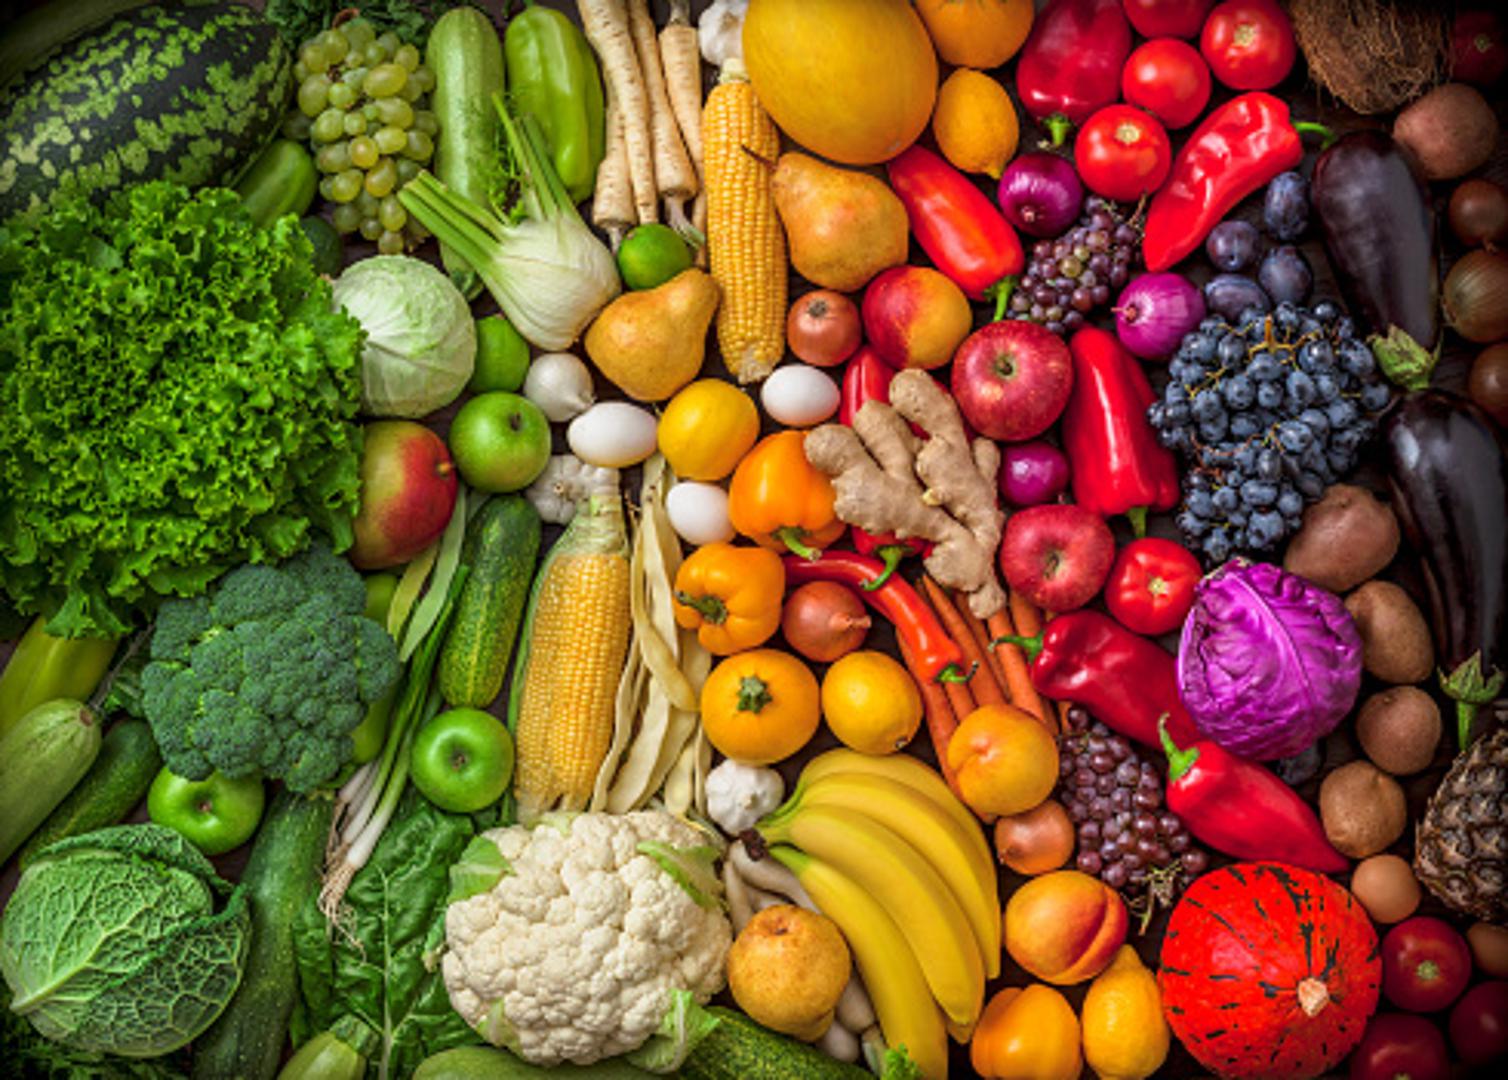 2. JEDI SVJEŽU HRANU
Prehrana zimi i prehrana ljeti kod većine ljudi znatno se razlikuje. Zimi volimo jesti težu hranu, masniju, a unosimo i veliku količinu ugljikohidrata. Međutim, to nije uvijek tako dobro za naš struk, bokove ili trbuh. Ako se pripremate za ljeto, ne postoji bolja stvar od svježeg sezonskog voća i povrća koje vam može pomoći u gubitku kilograma.